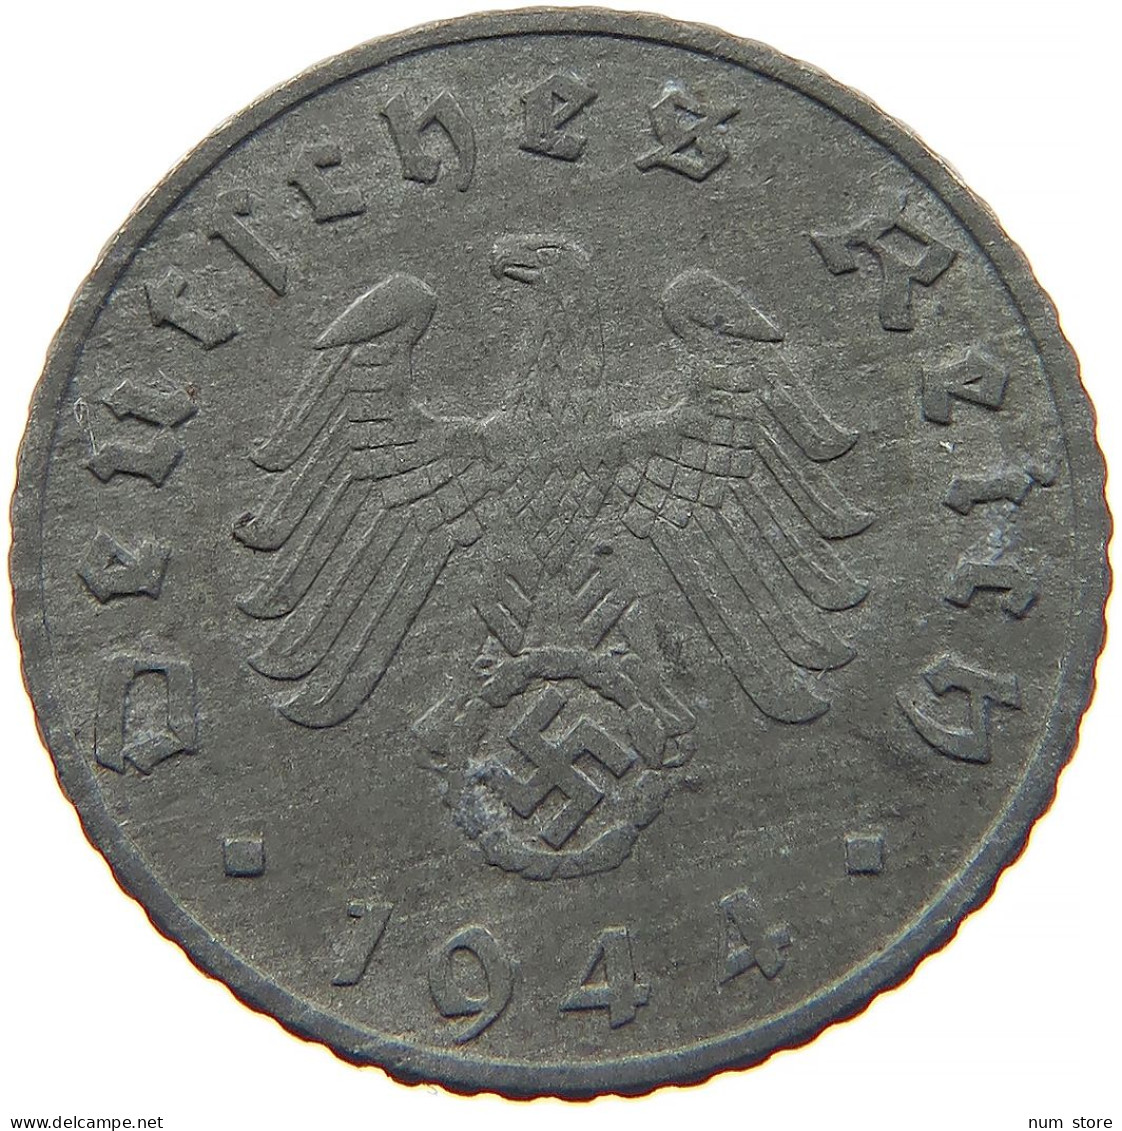 GERMANY 5 REICHSPFENNIG 1944 F #s091 0923 - 5 Reichspfennig